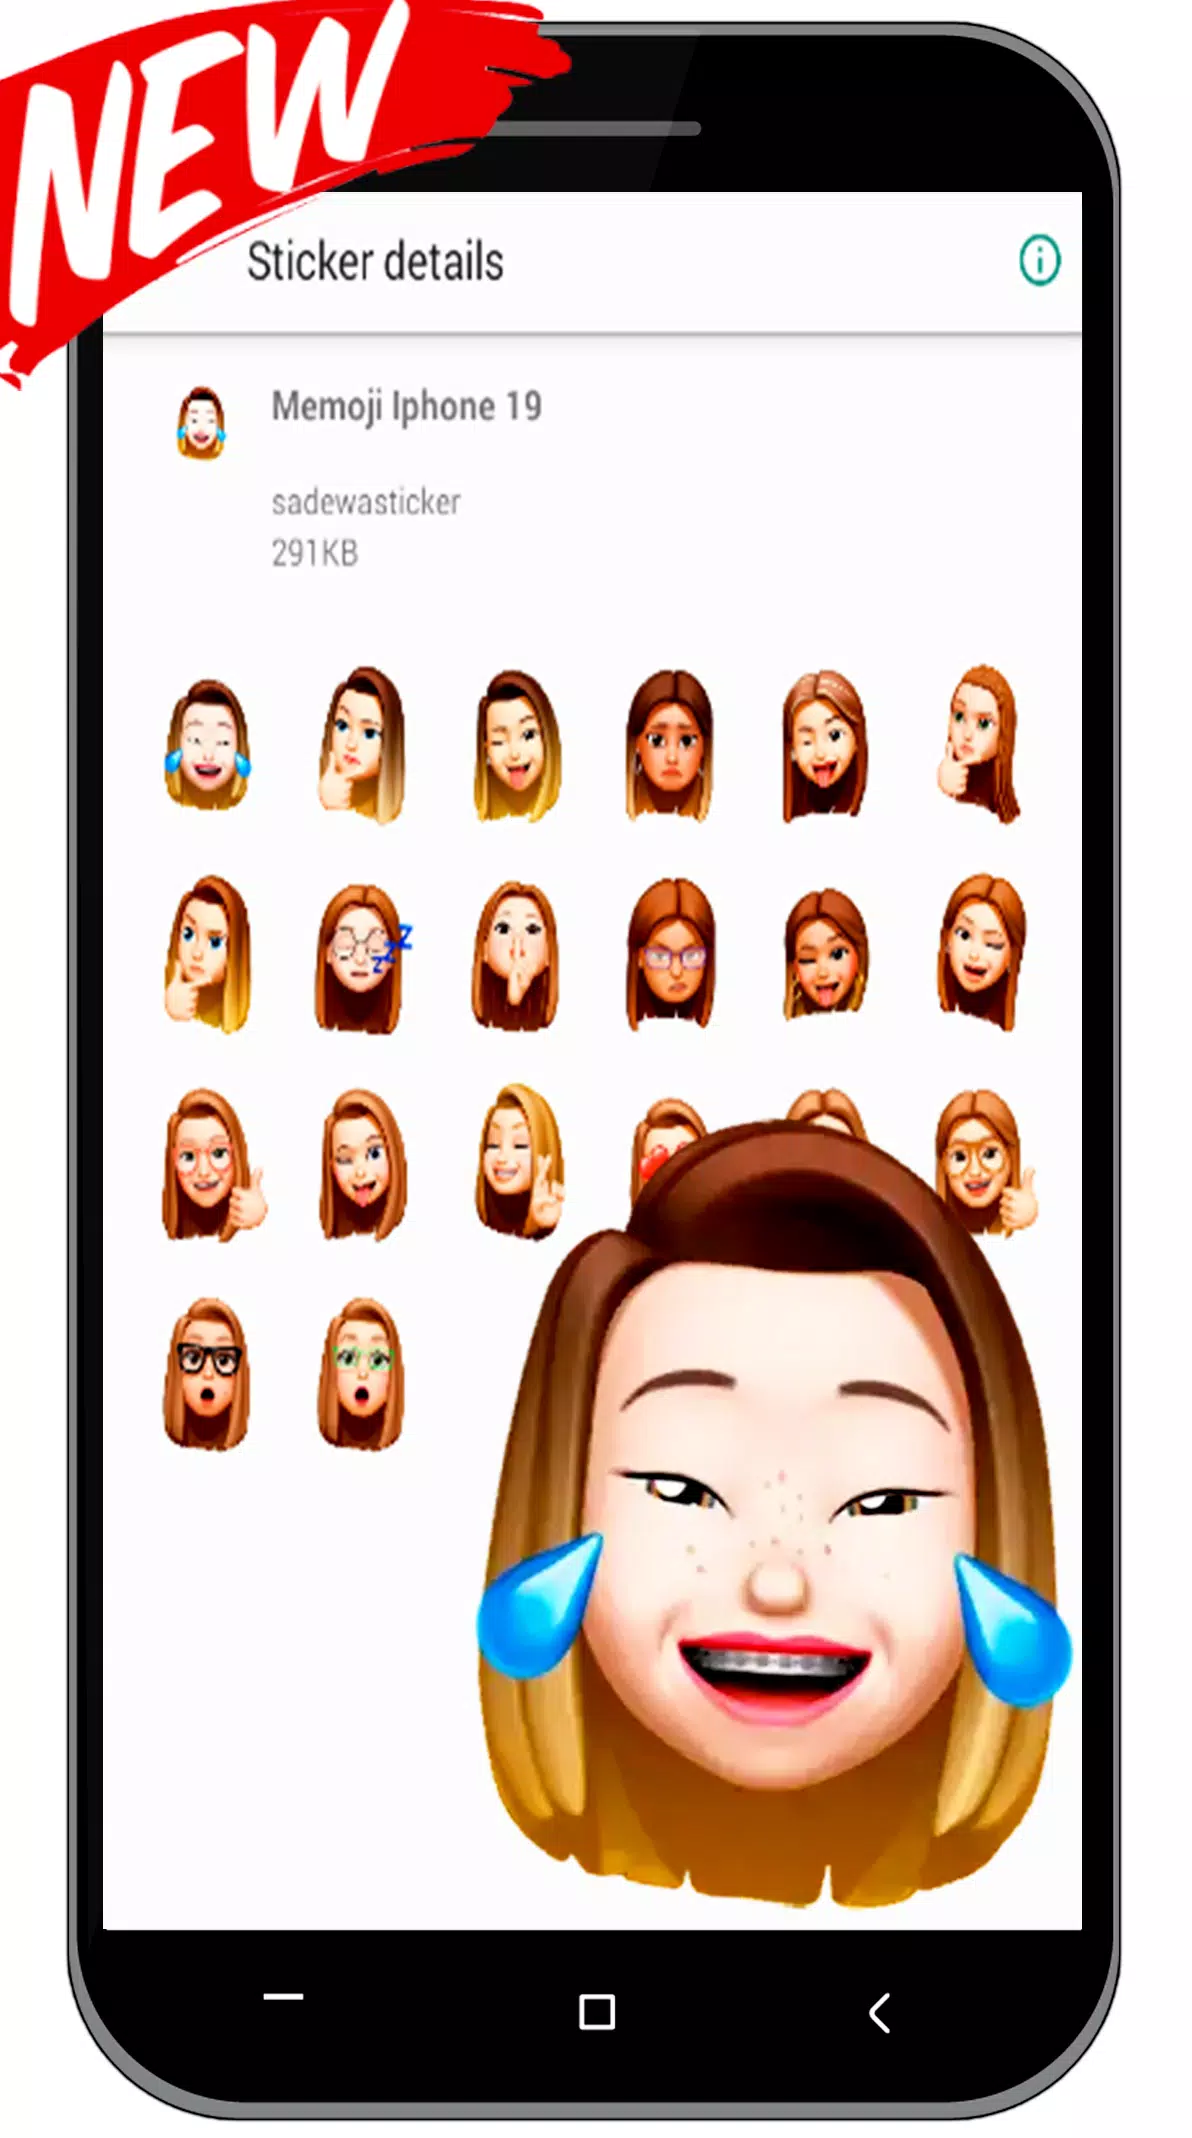 Emoji và Memoji Iphone Sticker For Whatsapp là những biểu tượng cảm xúc sáng tạo và độc đáo nhất hiện nay. Với nhiều kiểu dáng và biểu tượng khác nhau, đây chắc chắn là công cụ giúp bạn thể hiện cảm xúc của mình một cách chân thực và sinh động nhất. Hãy cập nhật ngay để trở thành người sáng tạo và vui tươi nhất trên Whatsapp.